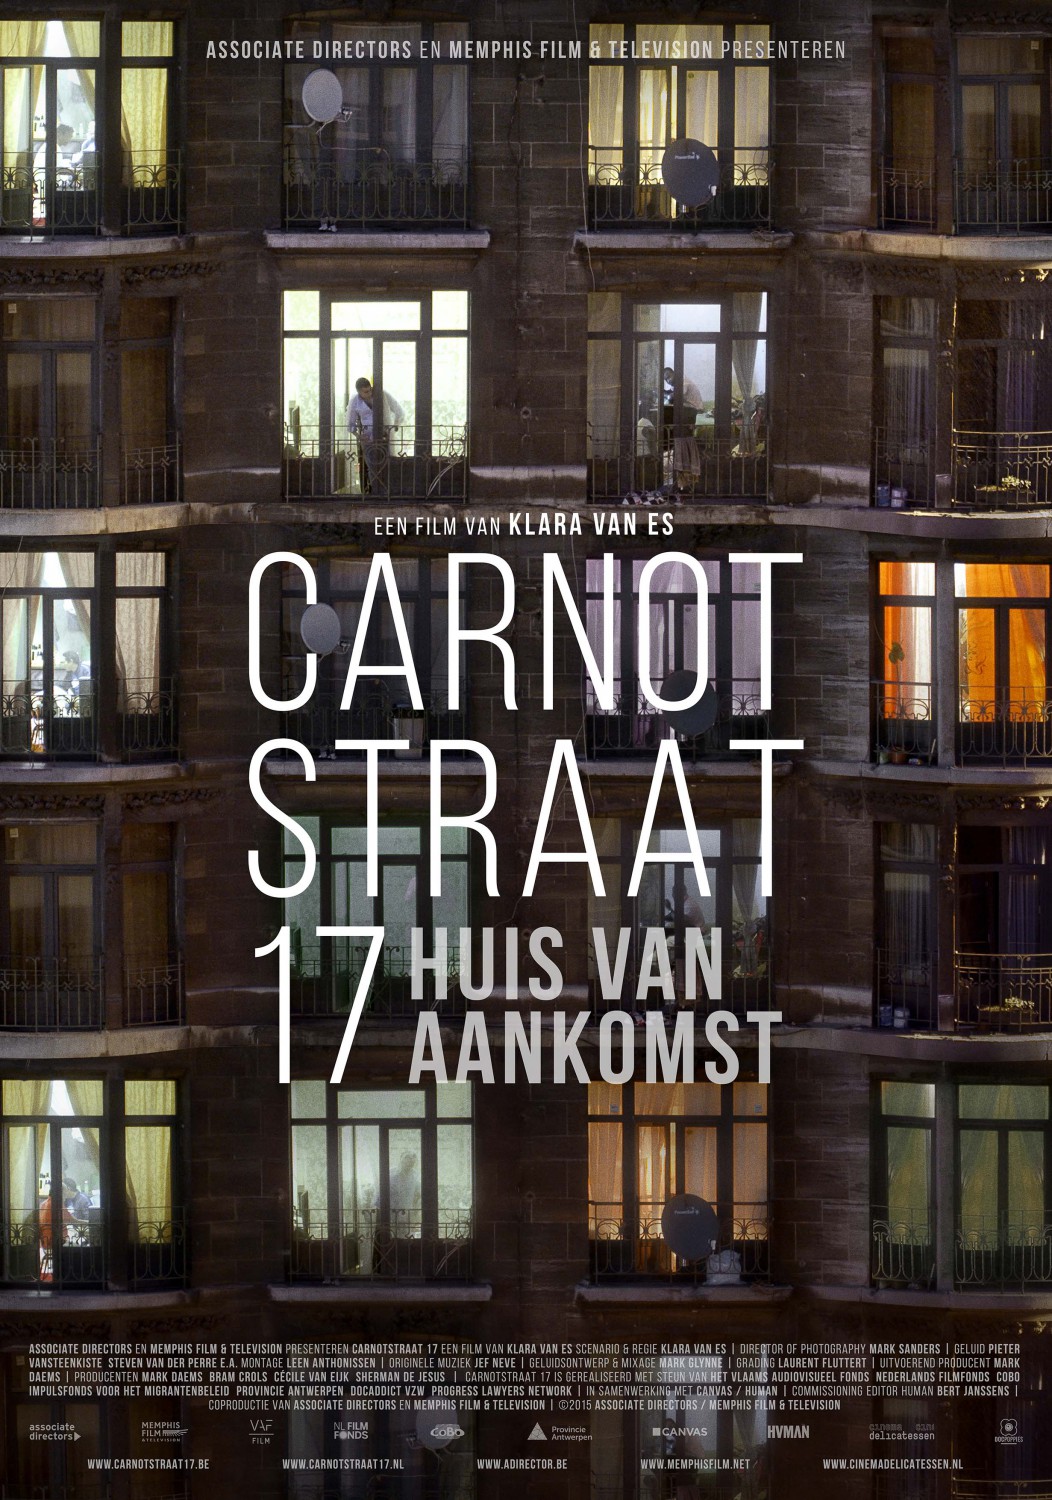 Extra Large Movie Poster Image for Carnotstraat 17: Huis van Aankomst 